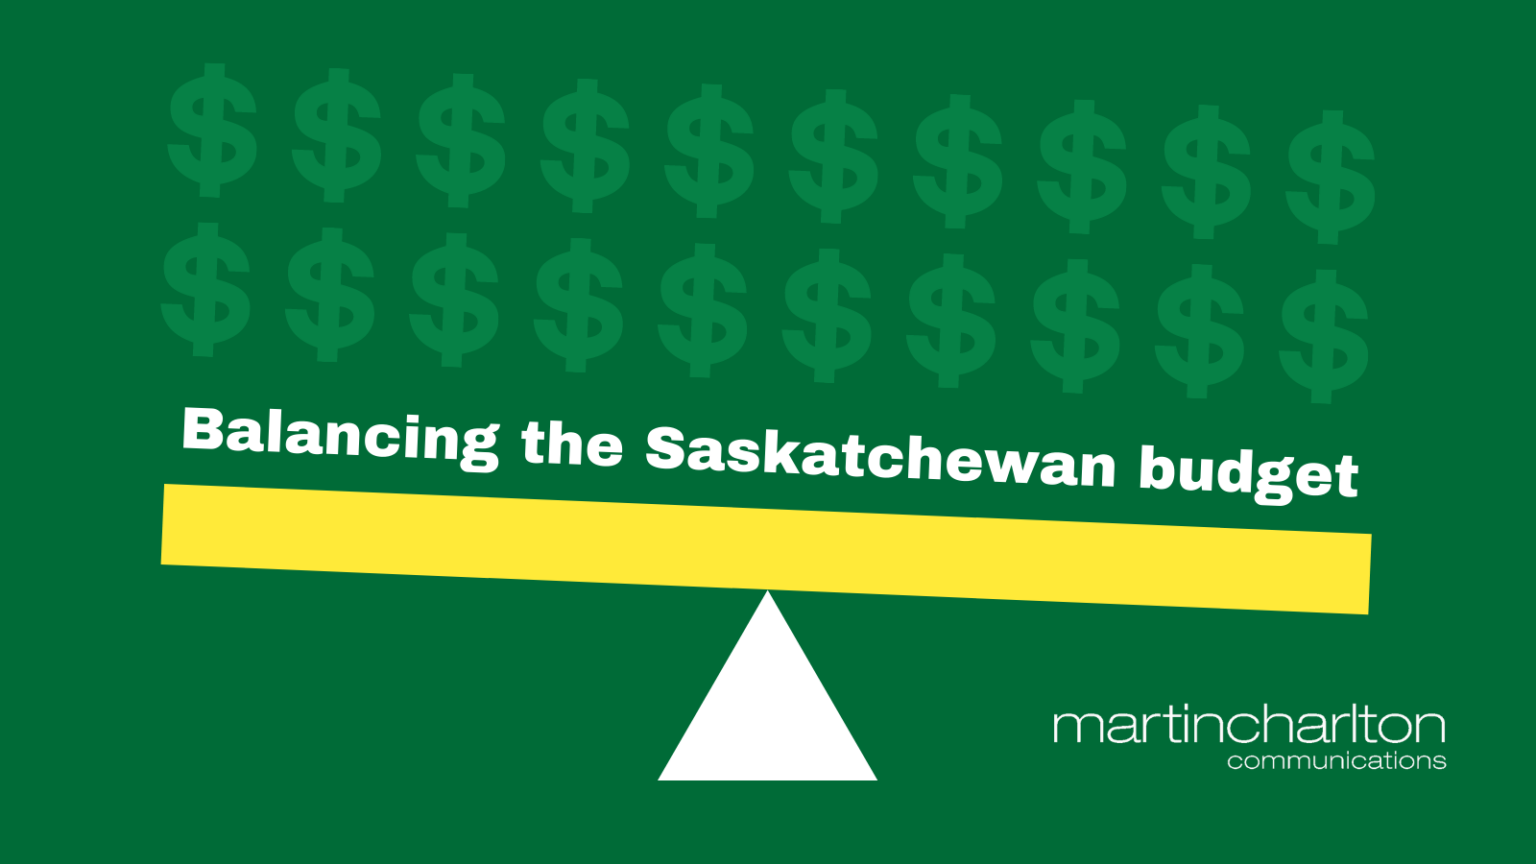 Saskatchewan budget 202223 needs balanced approach